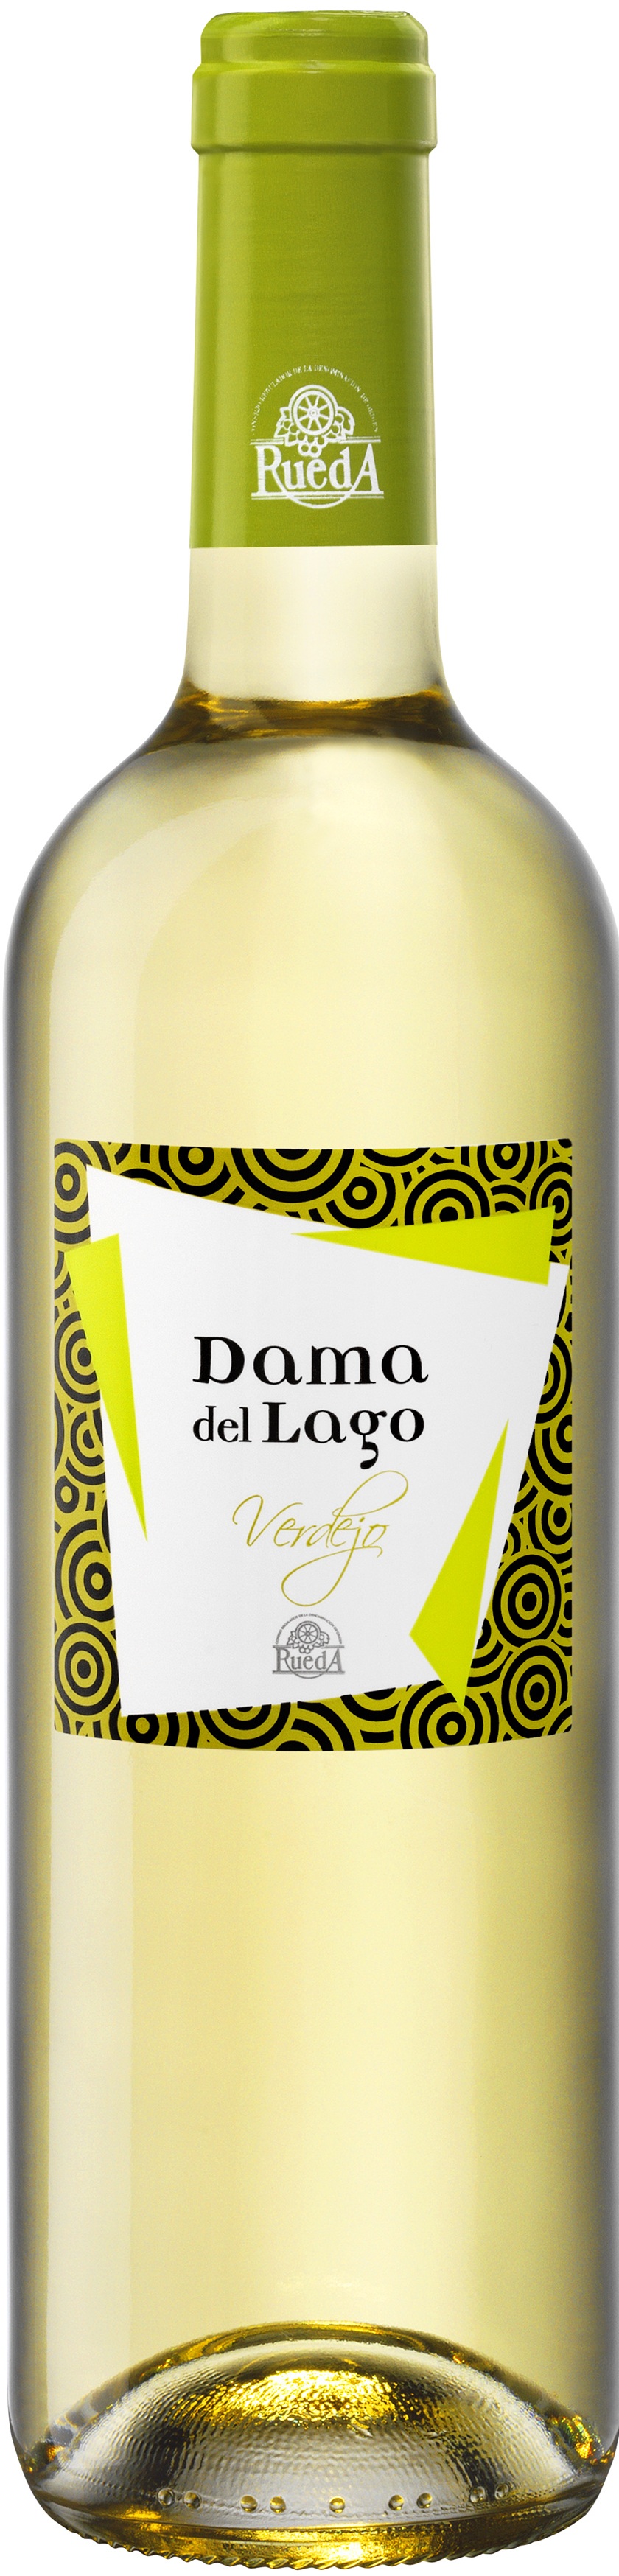 Imagen de la botella de Vino Dama del Lago Verdejo